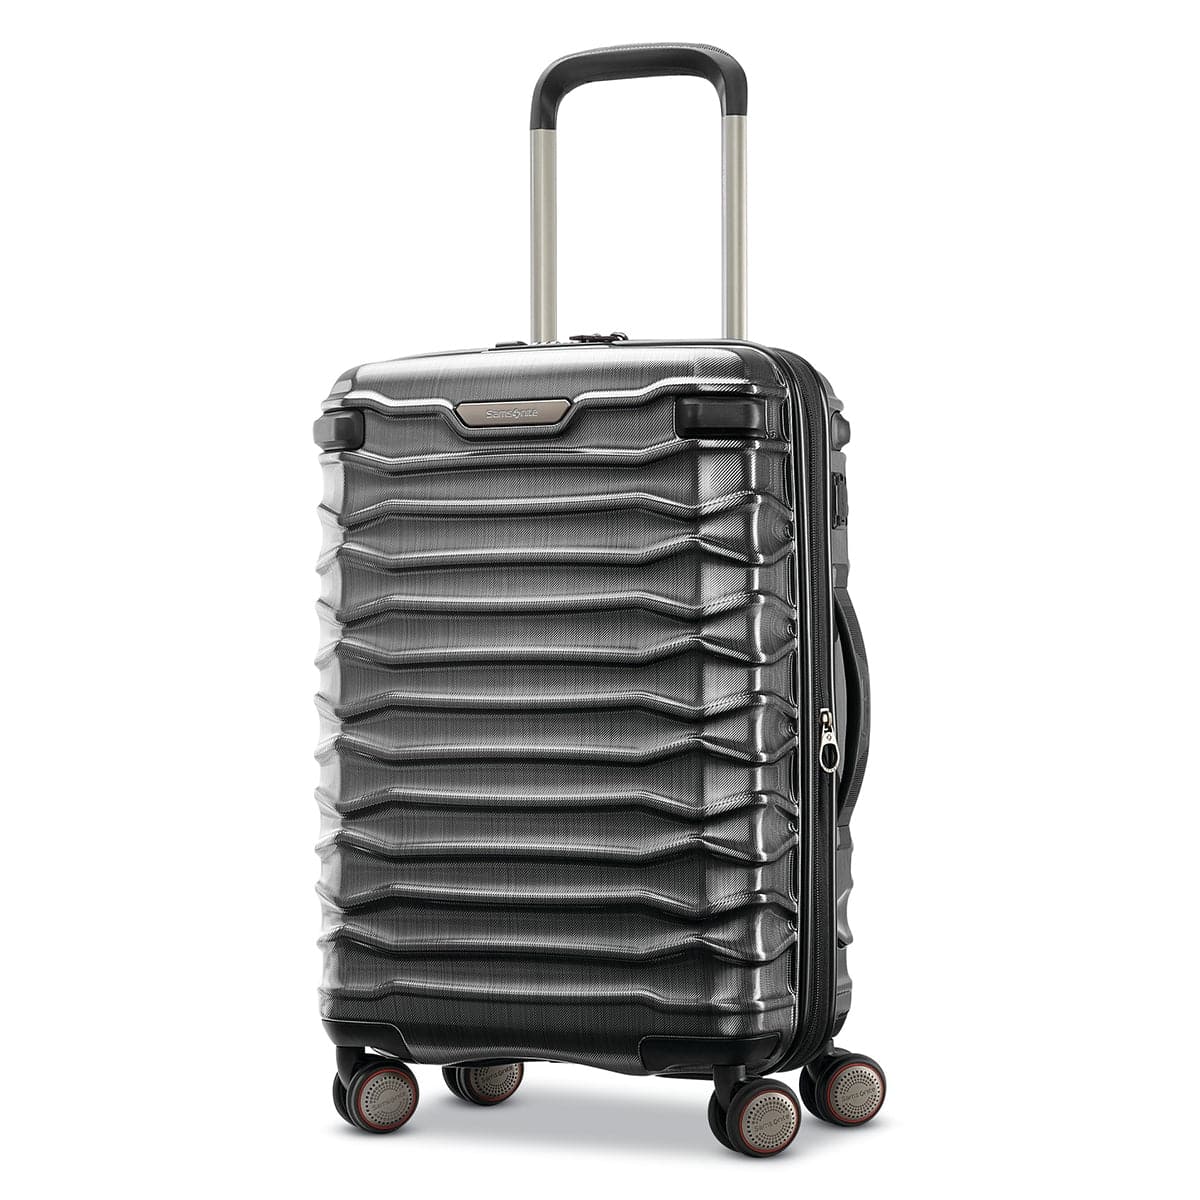 Samsonite Stryde 2 Hardside 22" Spinner Carry On Luggage